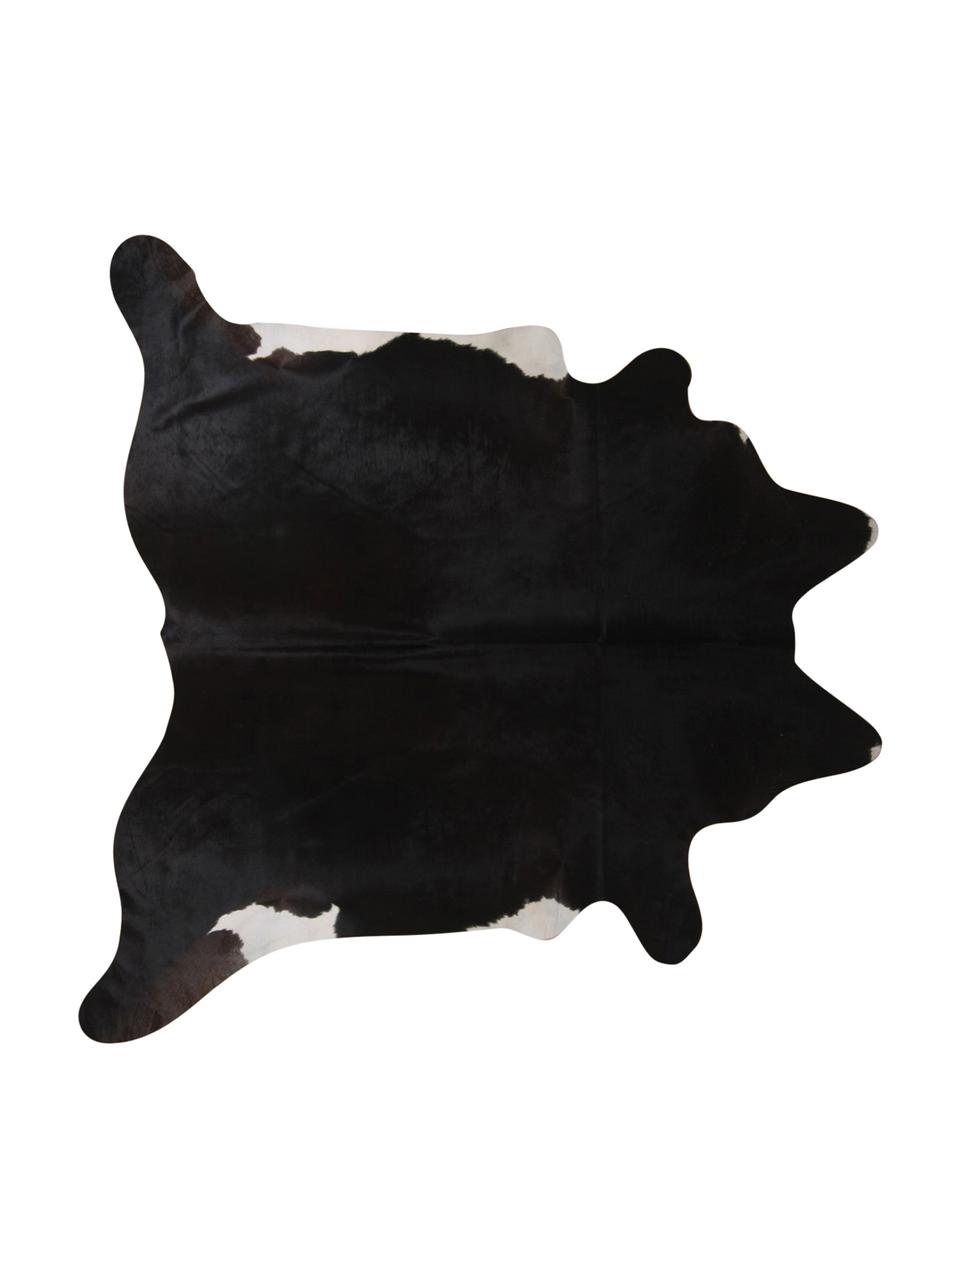 Dywan ze skóry bydlęcej Virgo, Skóra bydlęca, Czarny, biały, Unikatowa skóra bydlęca 969, 160 x 180 cm